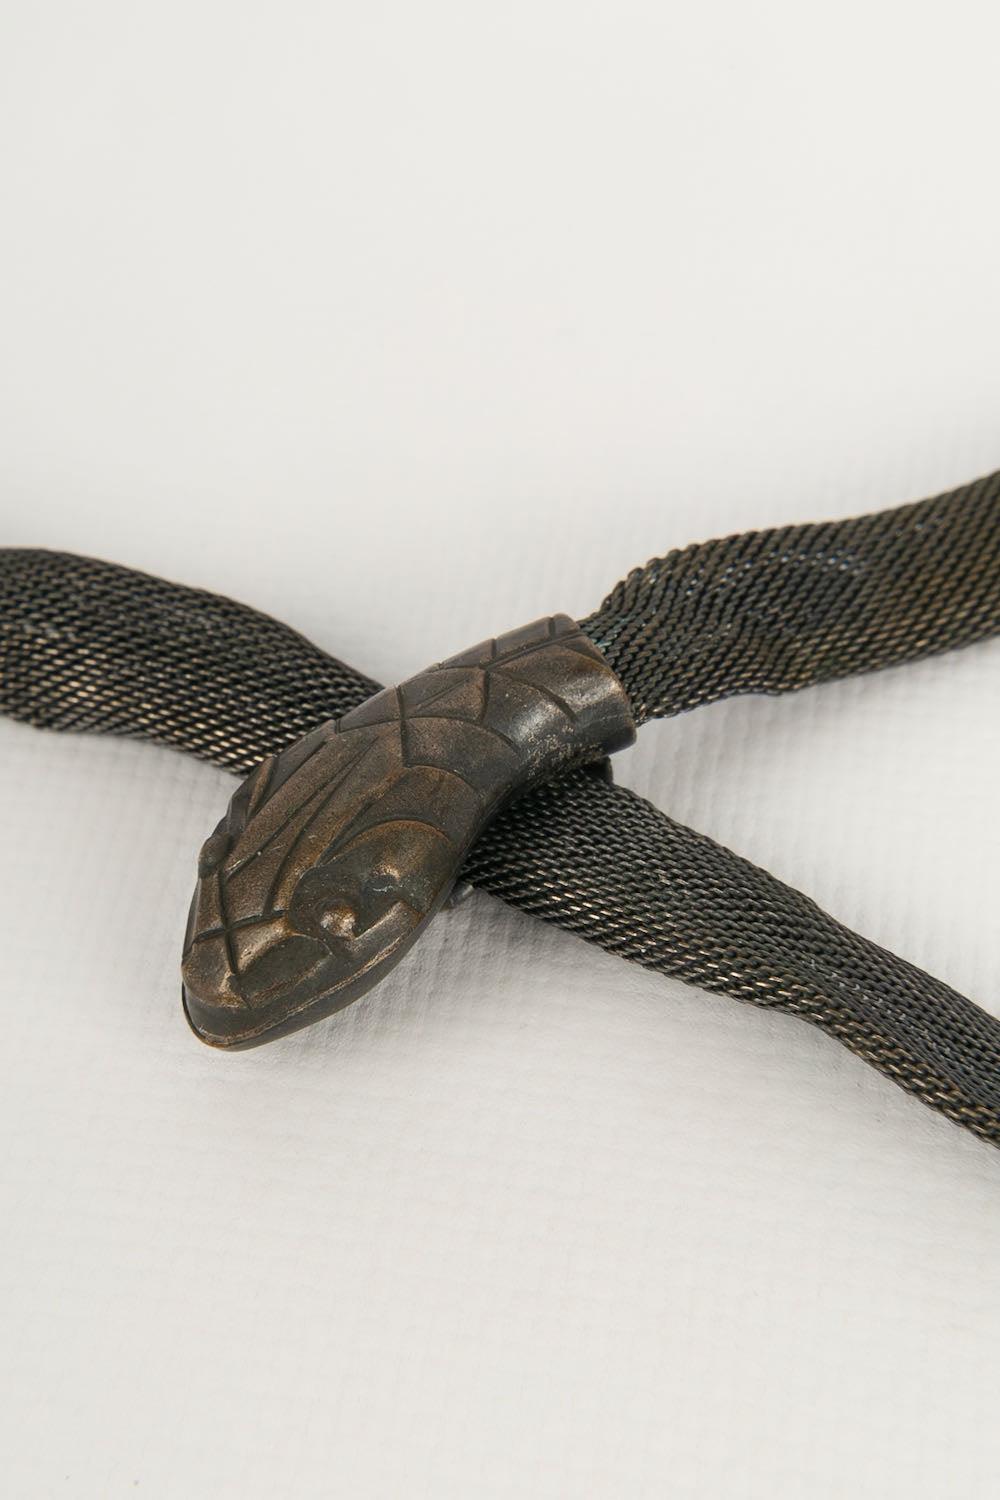 Snake Dark Silver Metal Belt 1920's For Sale 1